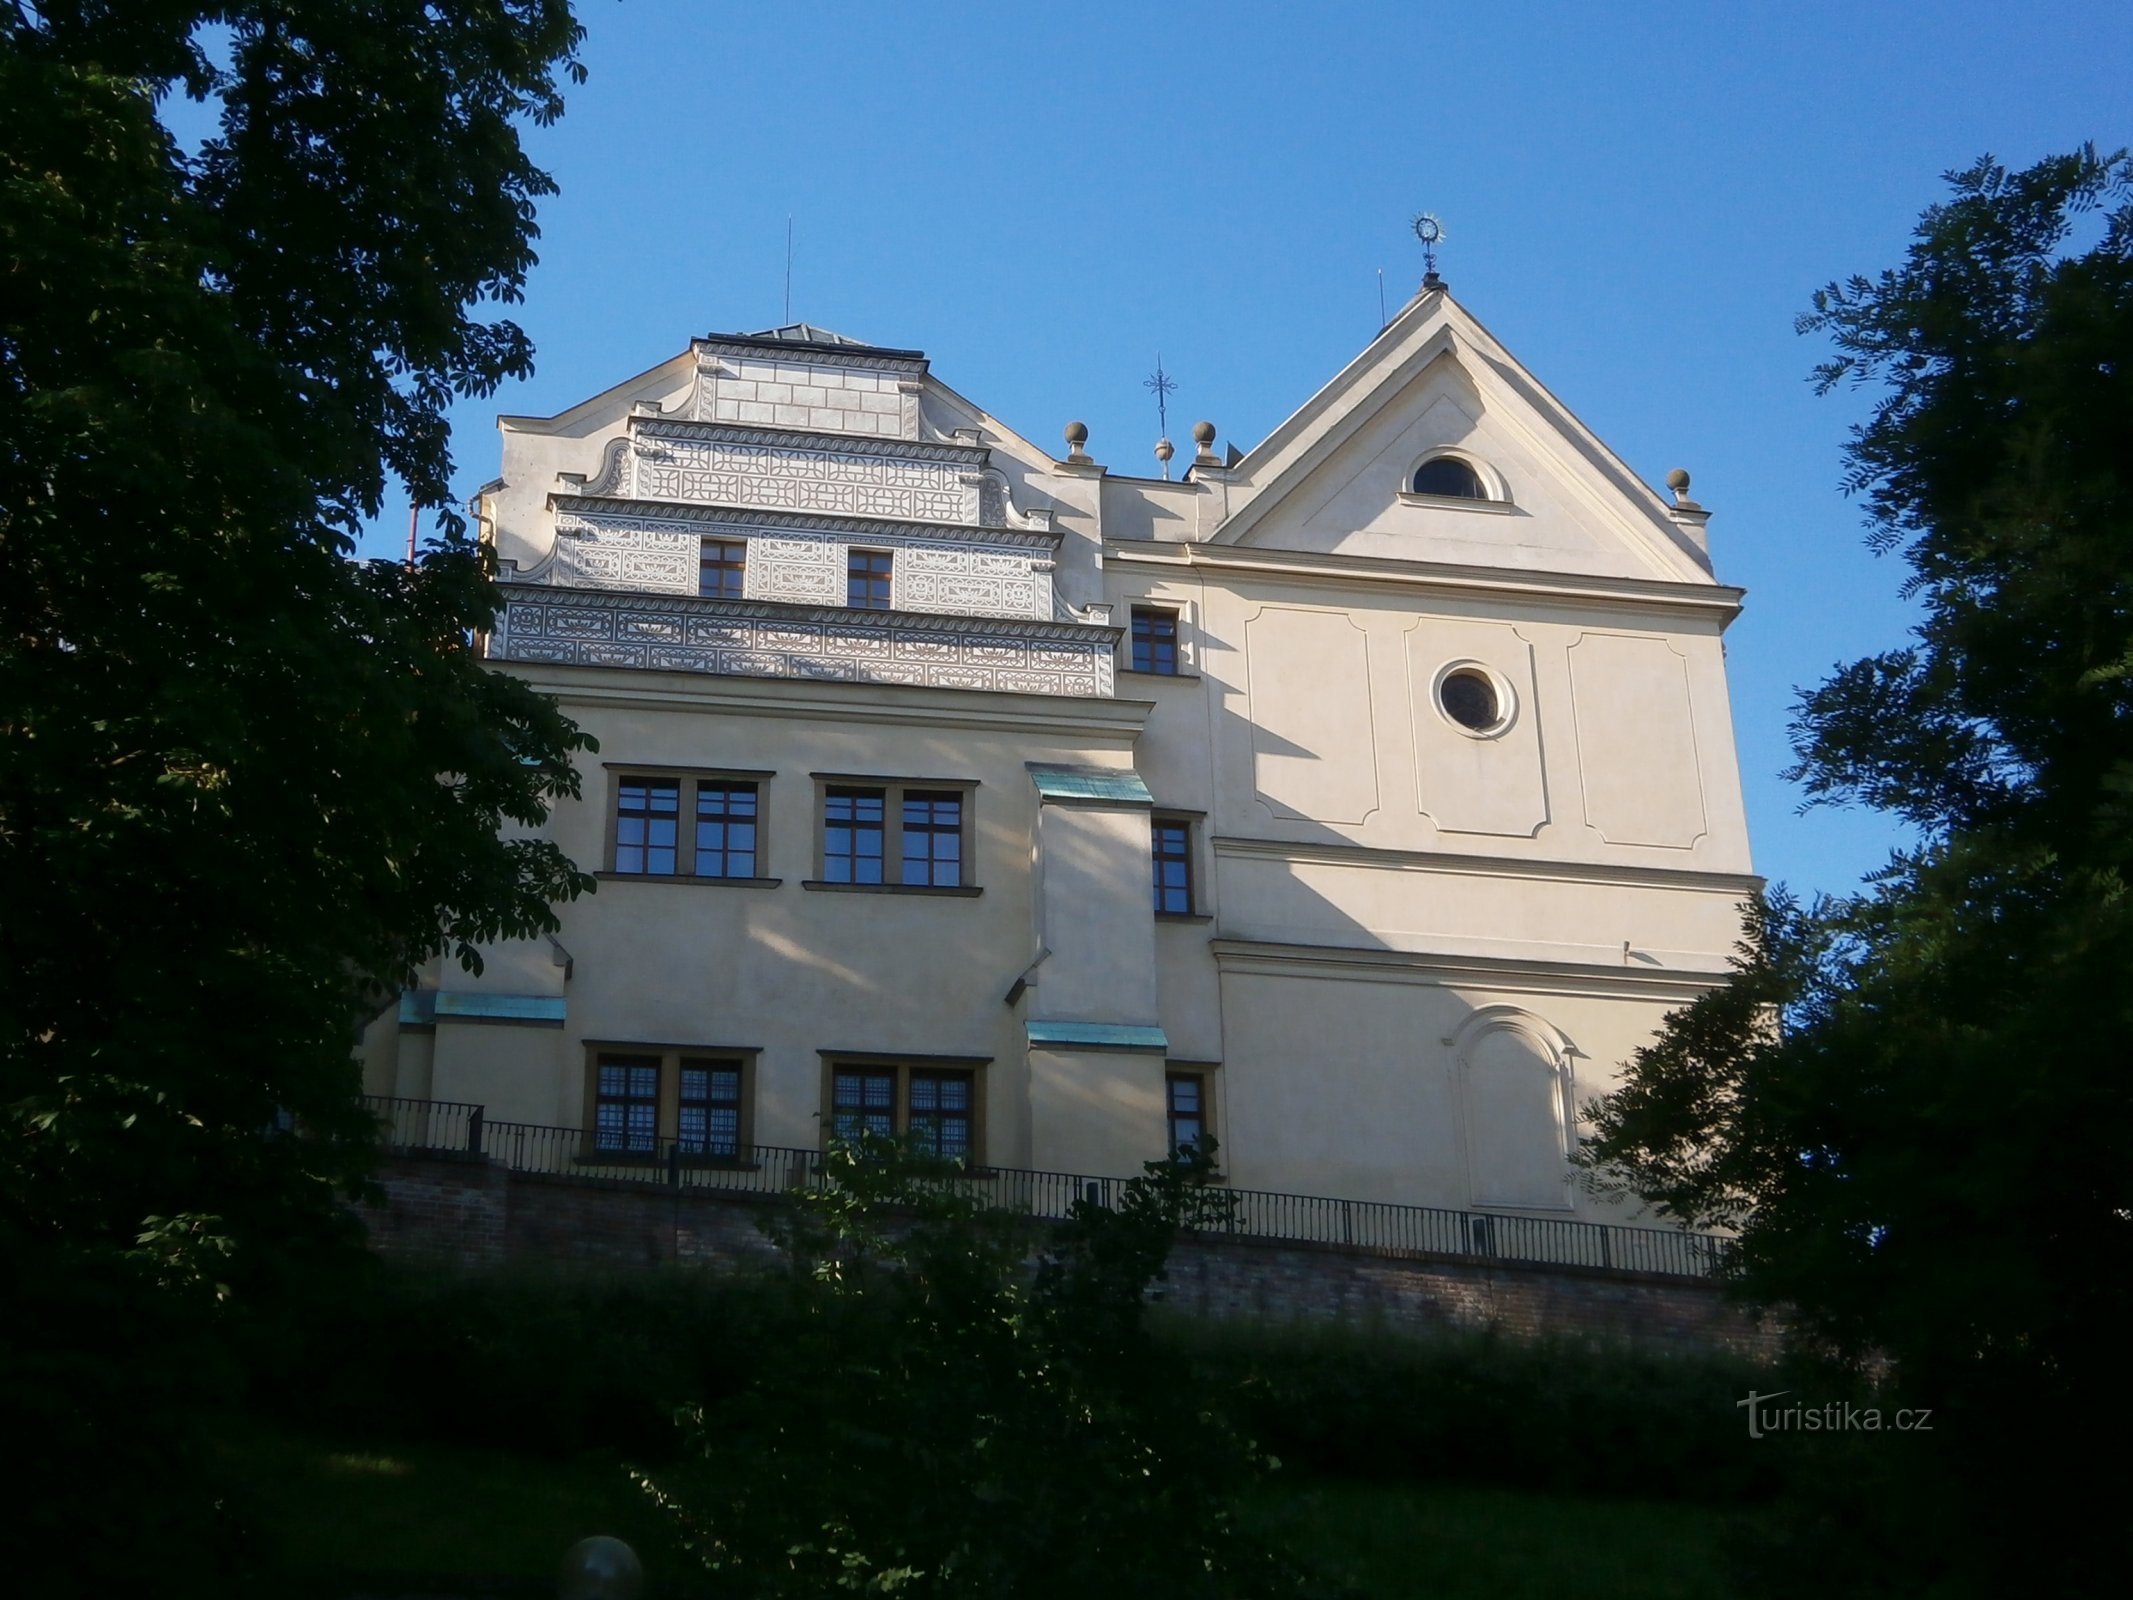 伯格雷夫的房子和圣约翰教堂Nepomuck 的约翰（Hradec Králové，2.7.2016 年 XNUMX 月 XNUMX 日）